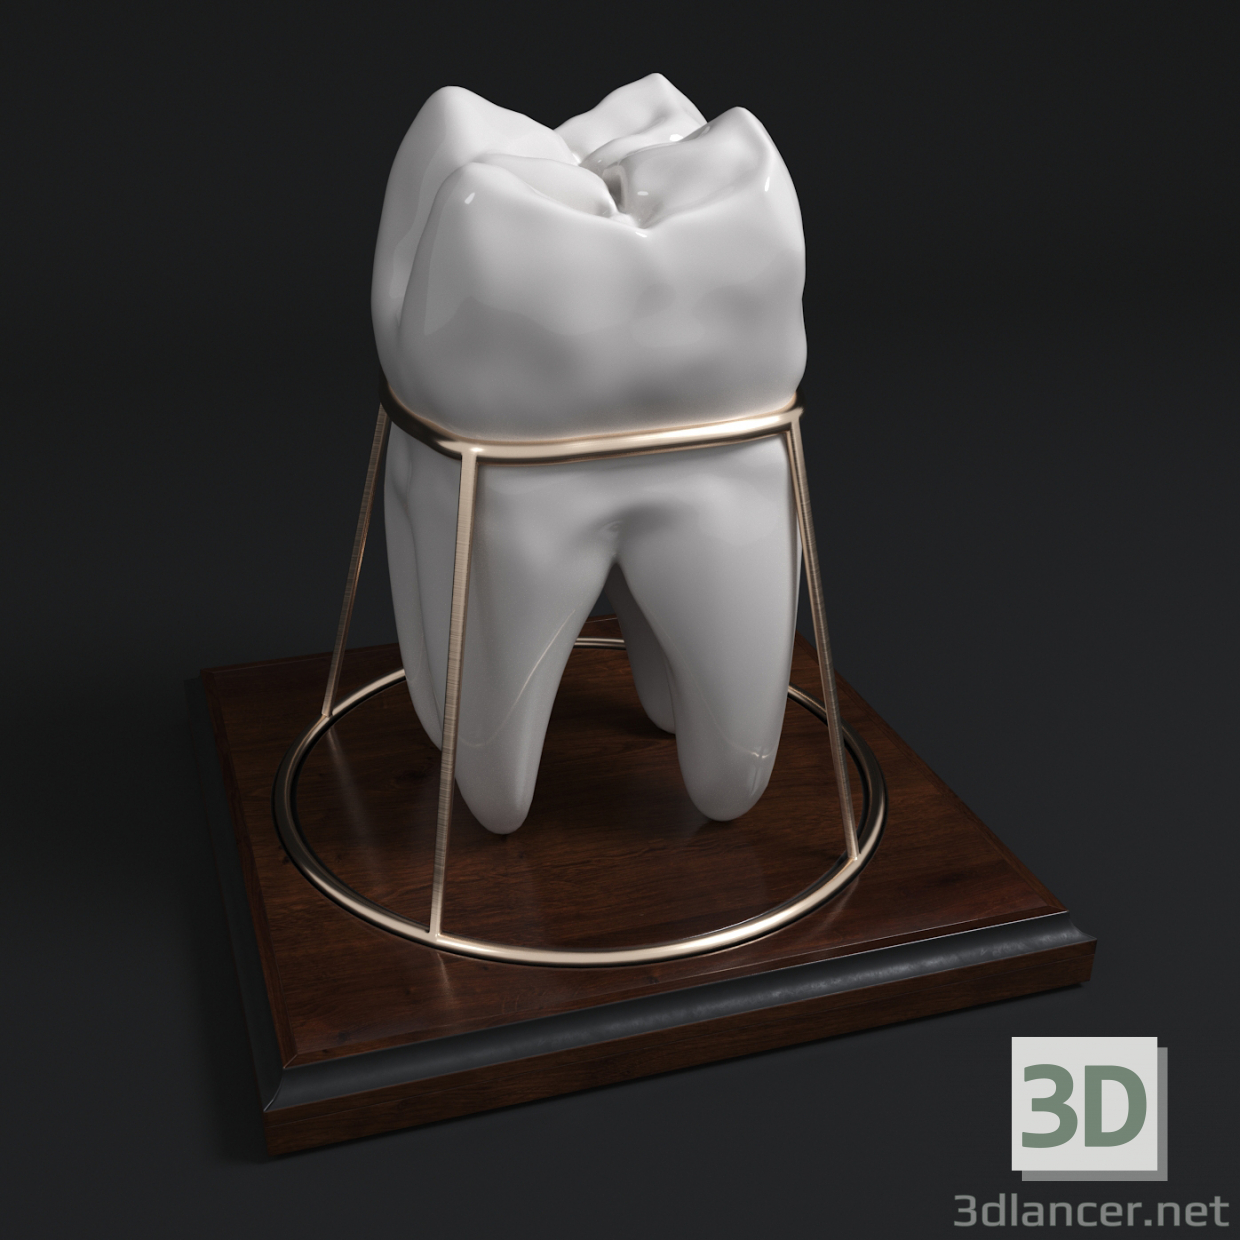 Diente_souvenir 3D modelo Compro - render